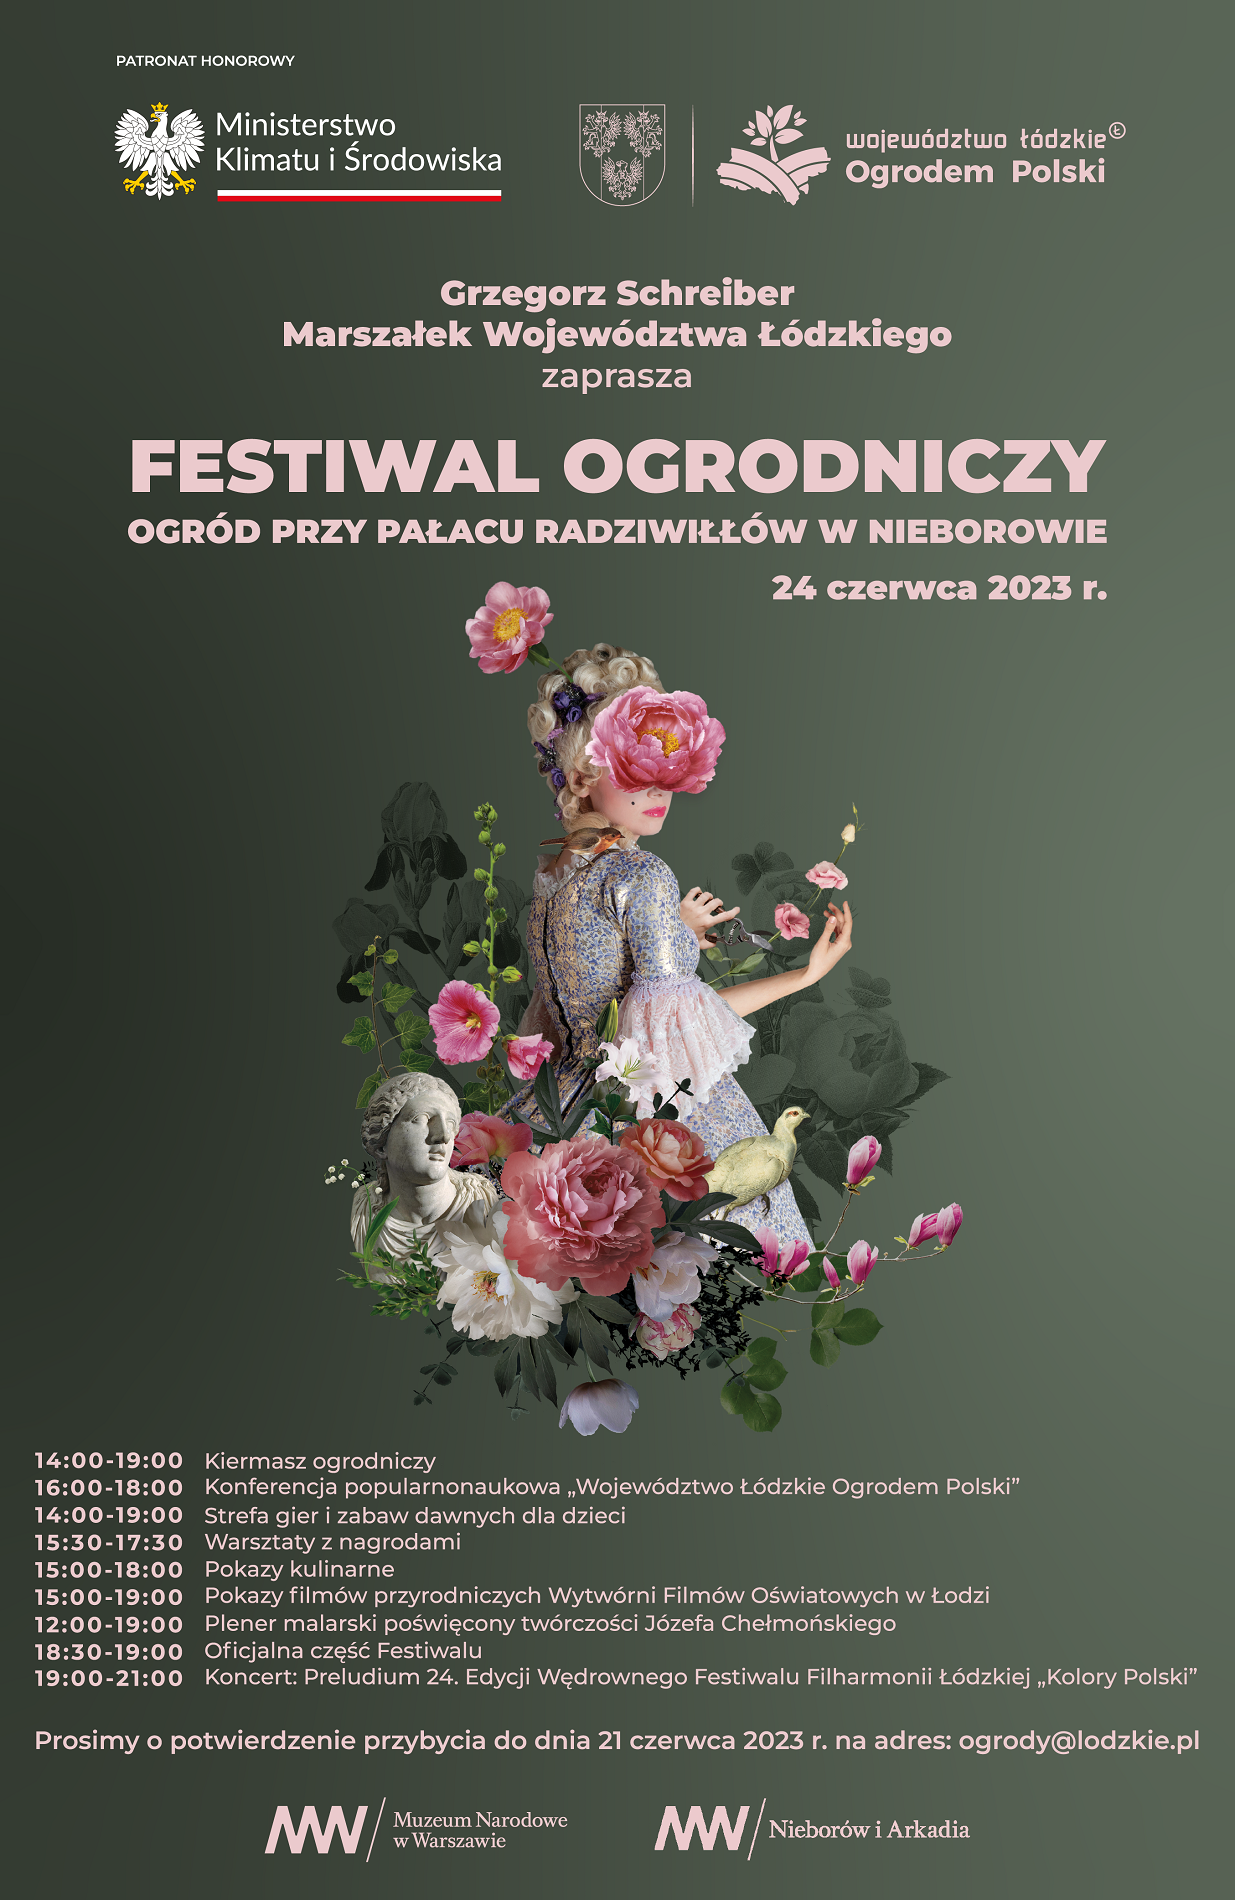 Festiwal ogrodniczy w Nieborowie 24 czerwca 2023 r.